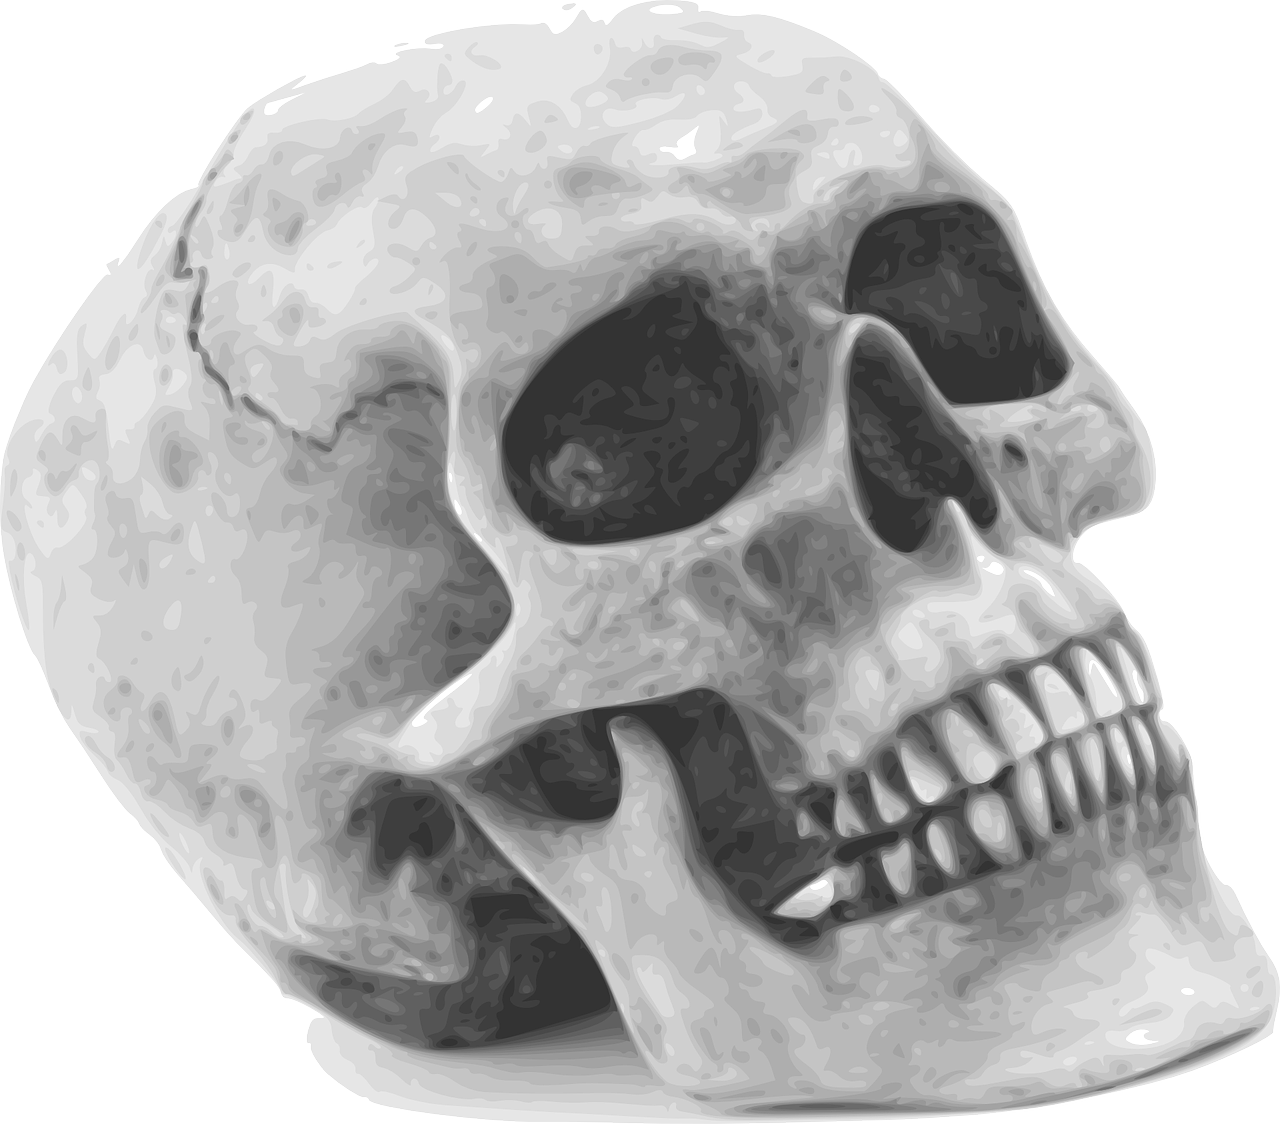 Kaukolė, Skeletas, Žmogus, Išlieka, Anatomija, Žmogaus Likučiai, Siaubas, Košmaras, Halloween, Mirtis